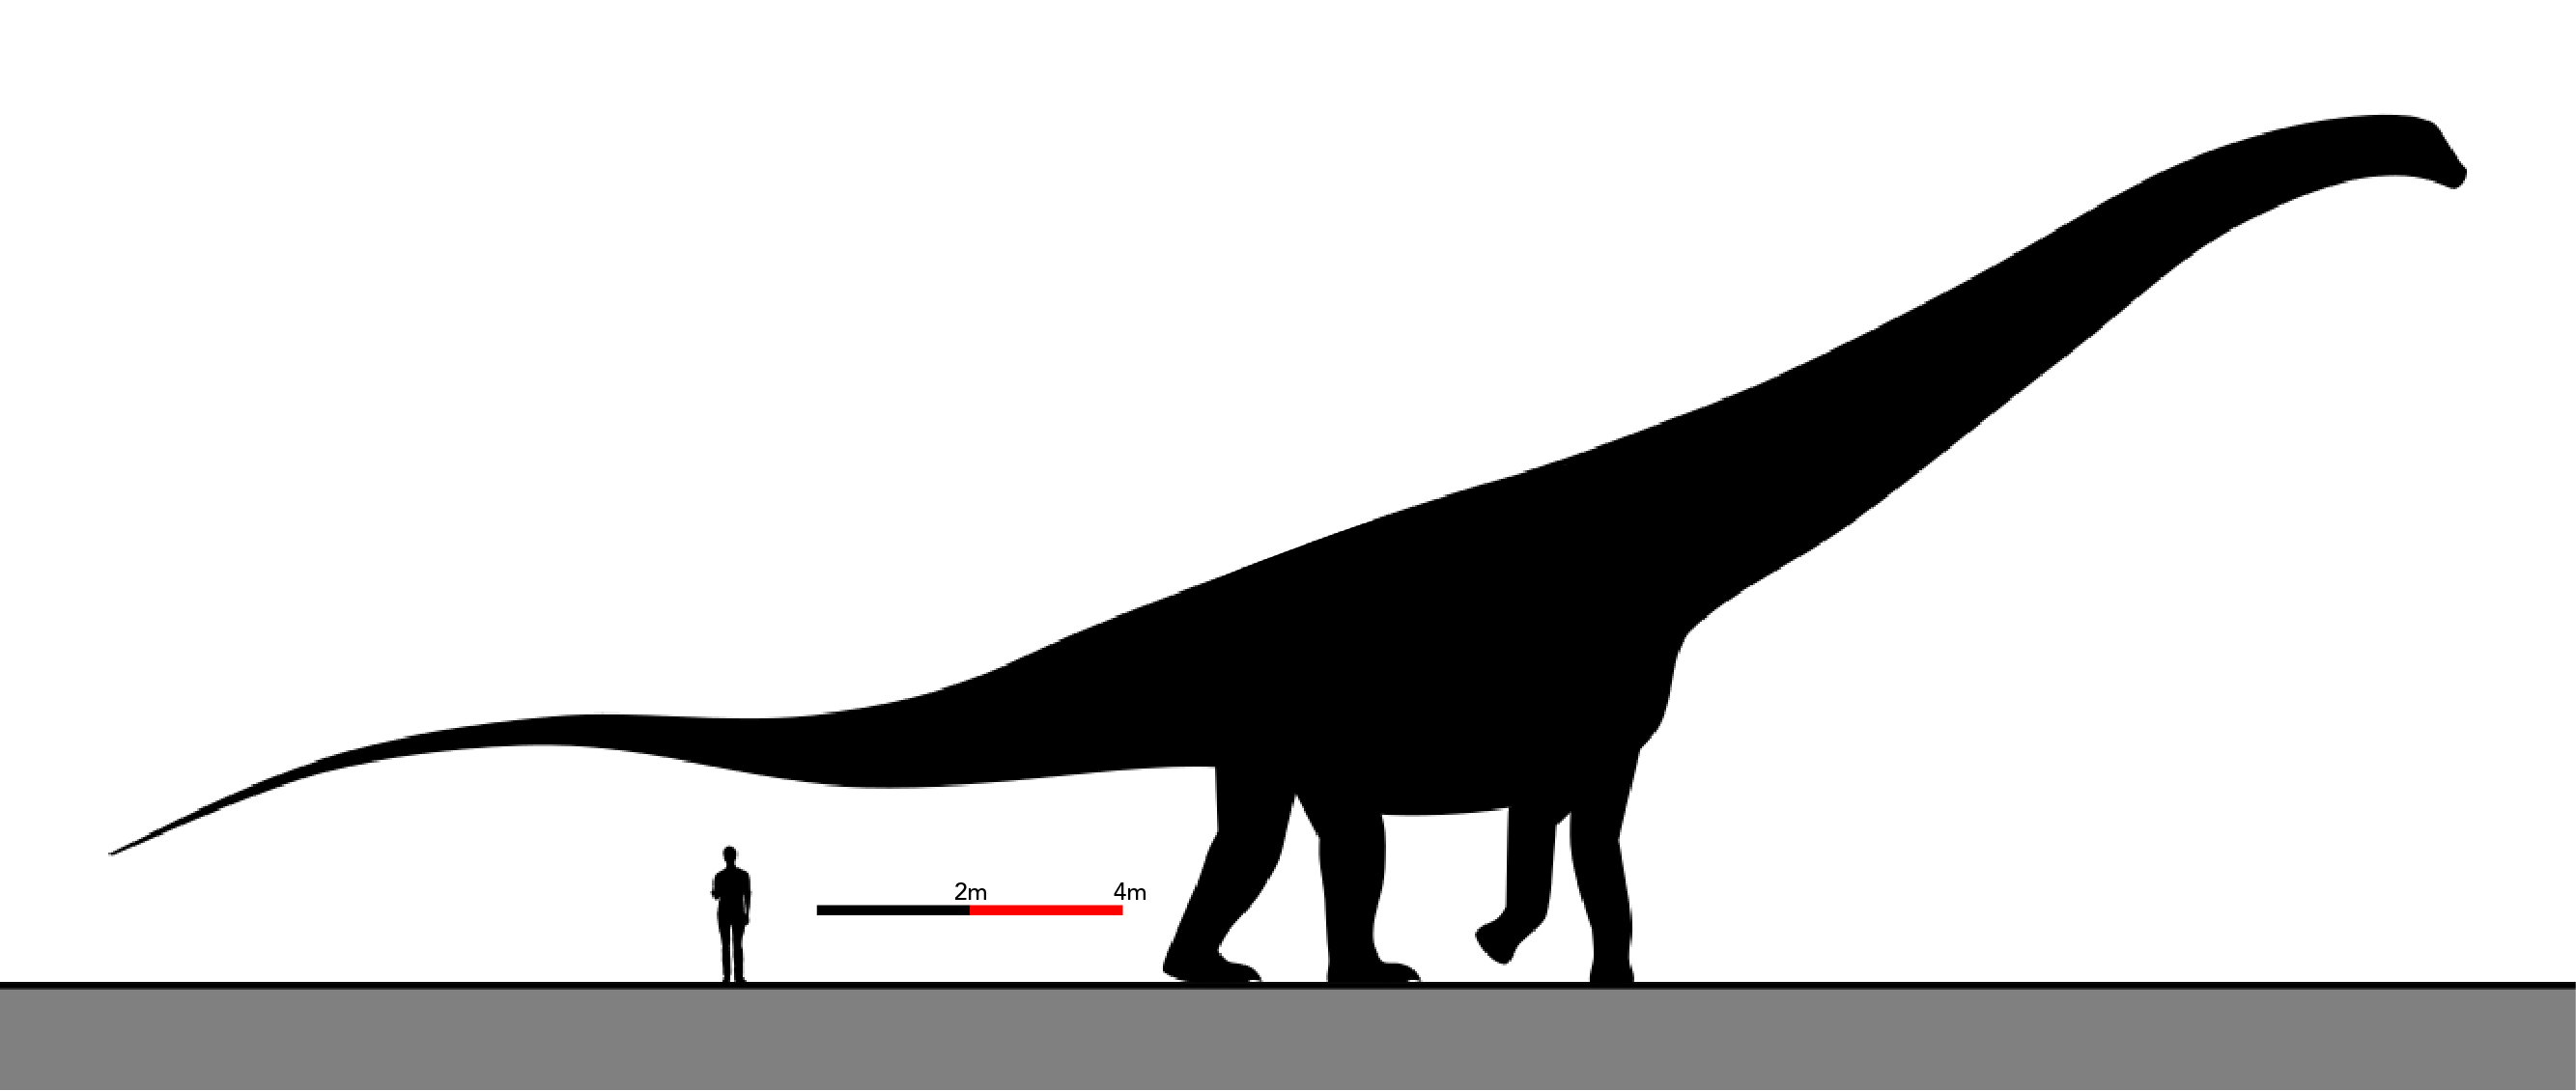 Graphique illustrant les tailles relatives d’un argentinosaurus huinculensis et d’un être humain 